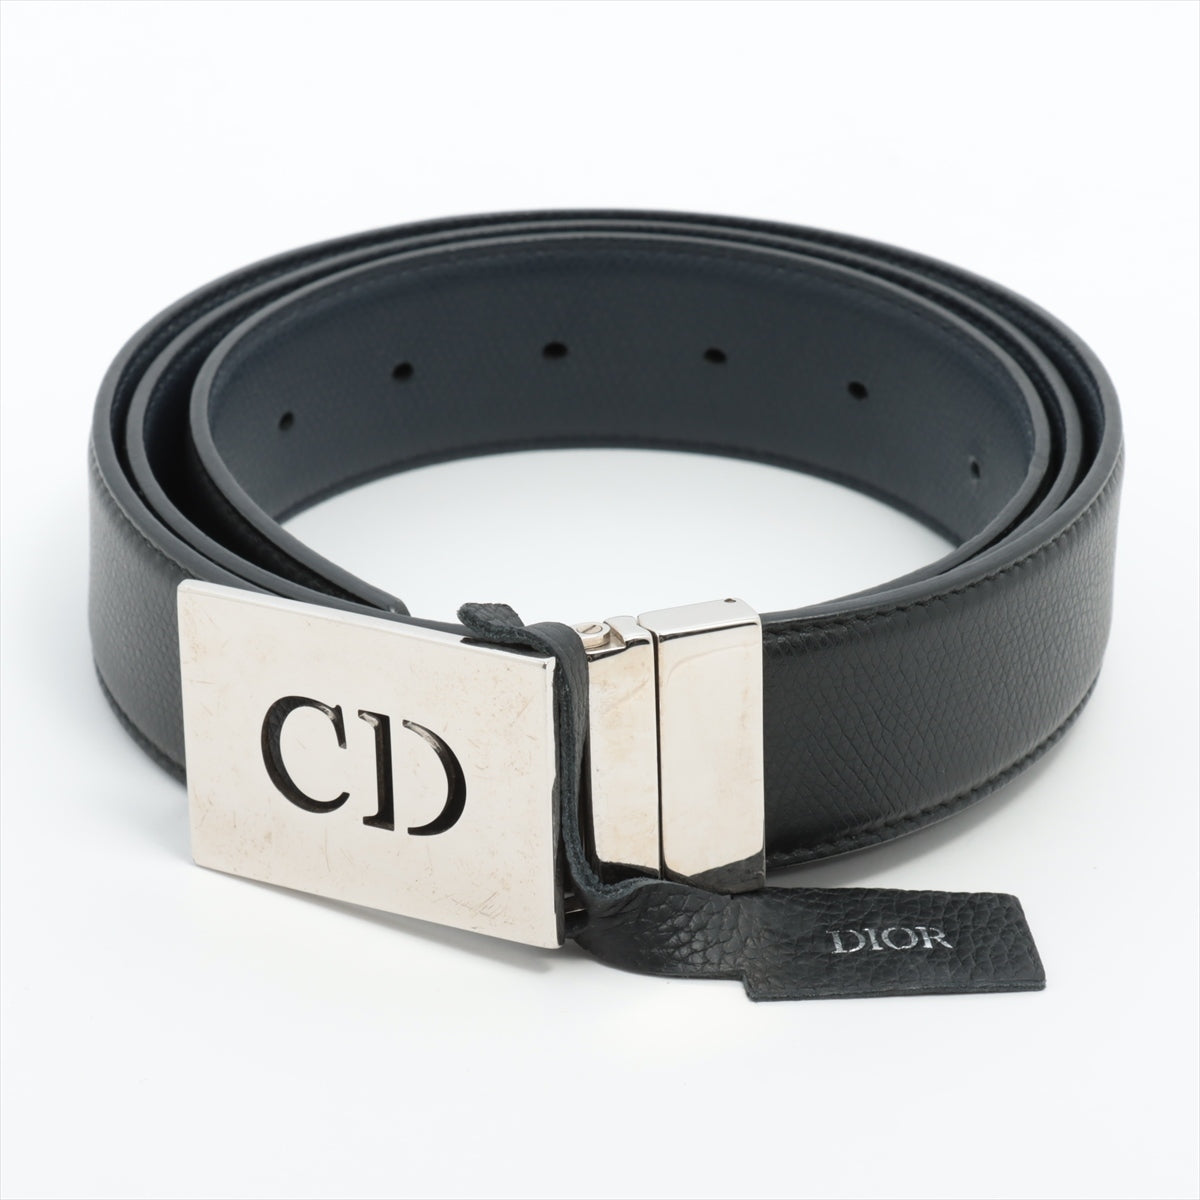 Dior Belt Leather BlackNavy